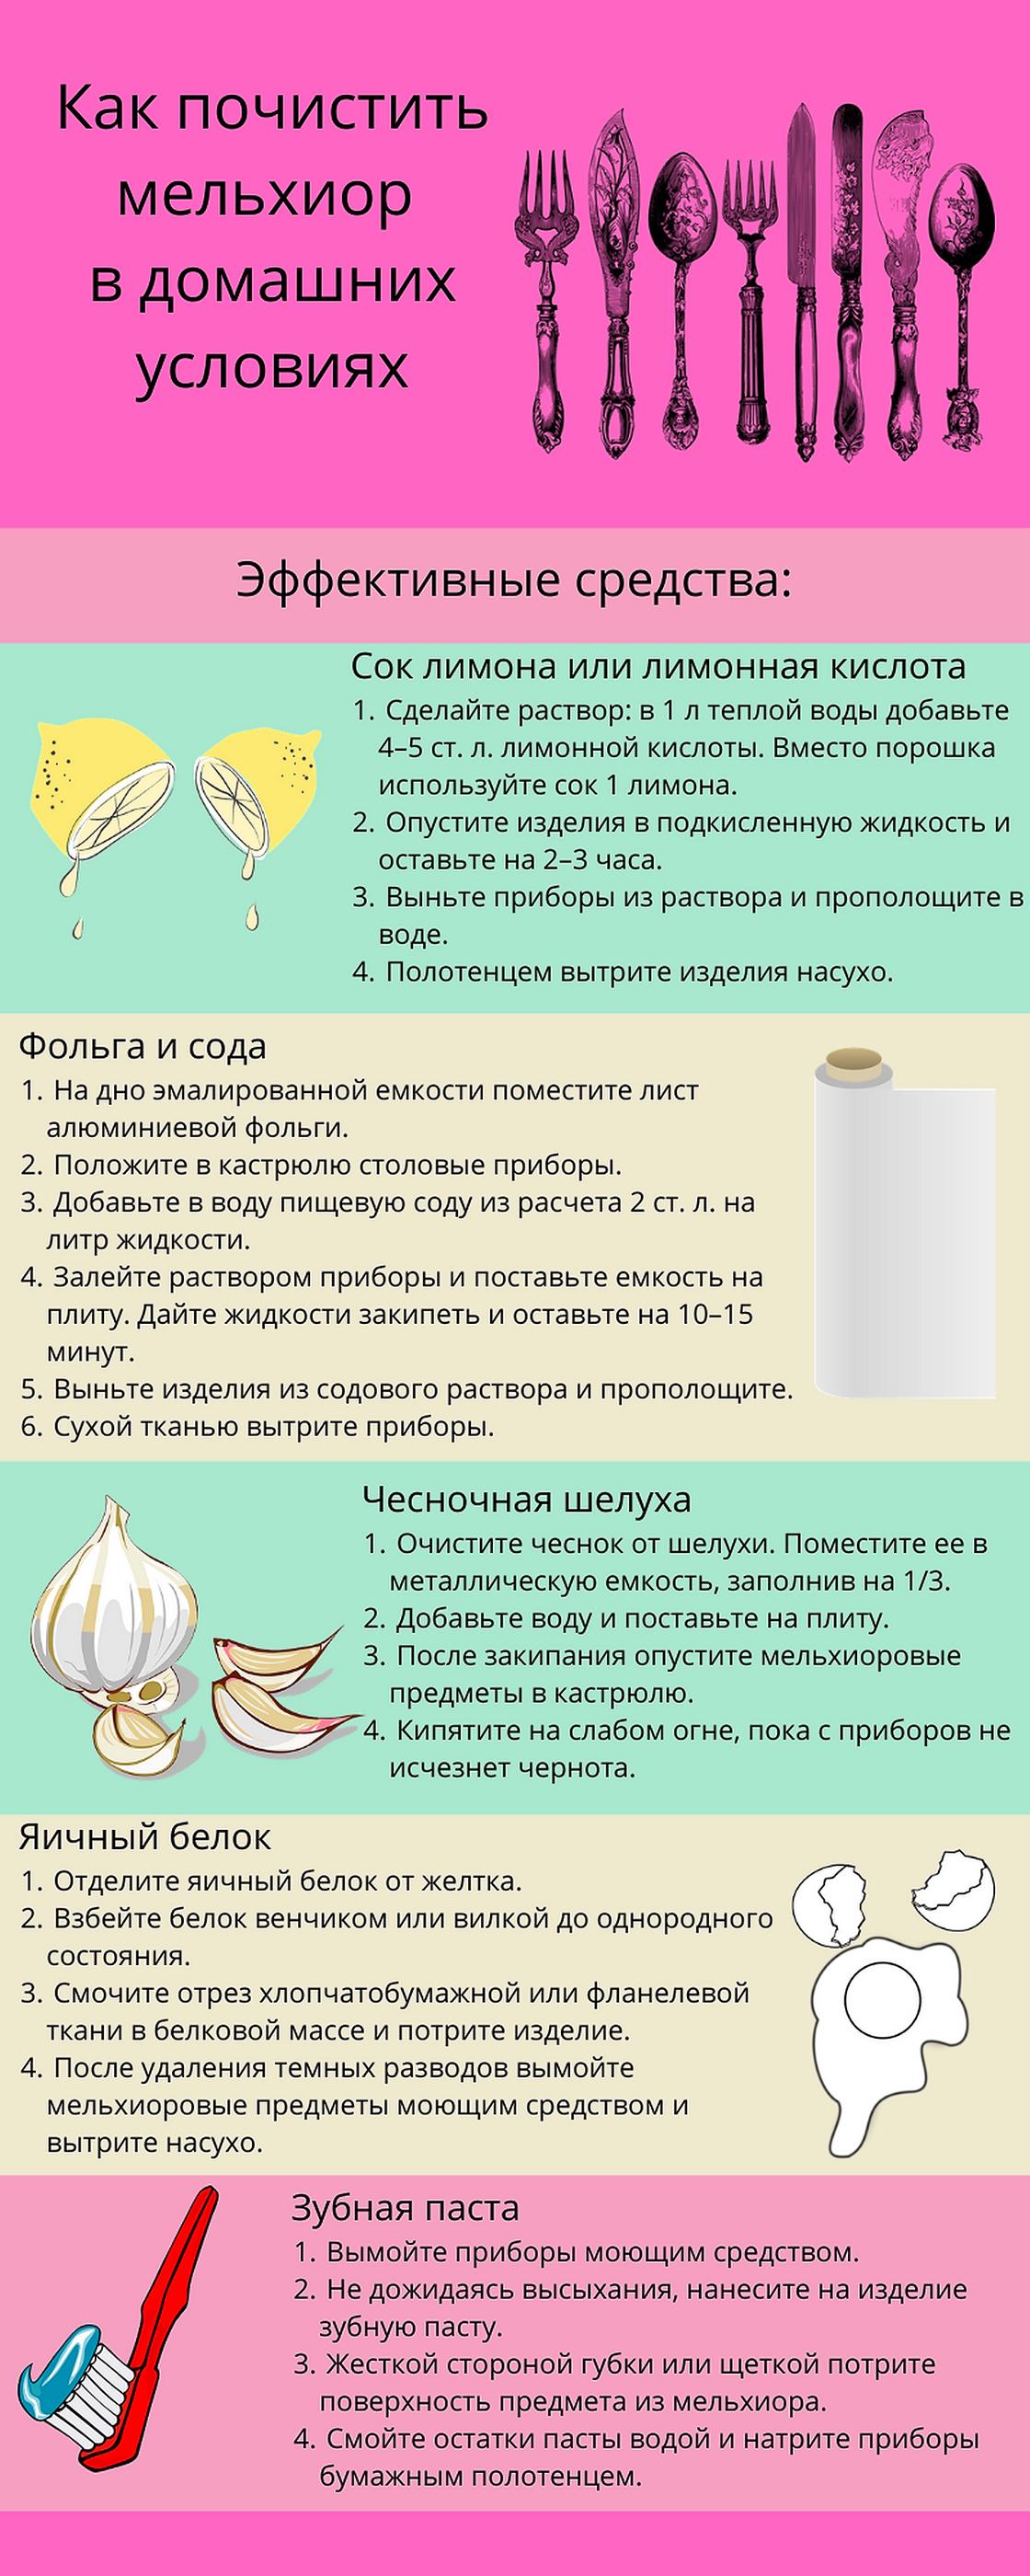 Инфографика: как почистить мельхиор